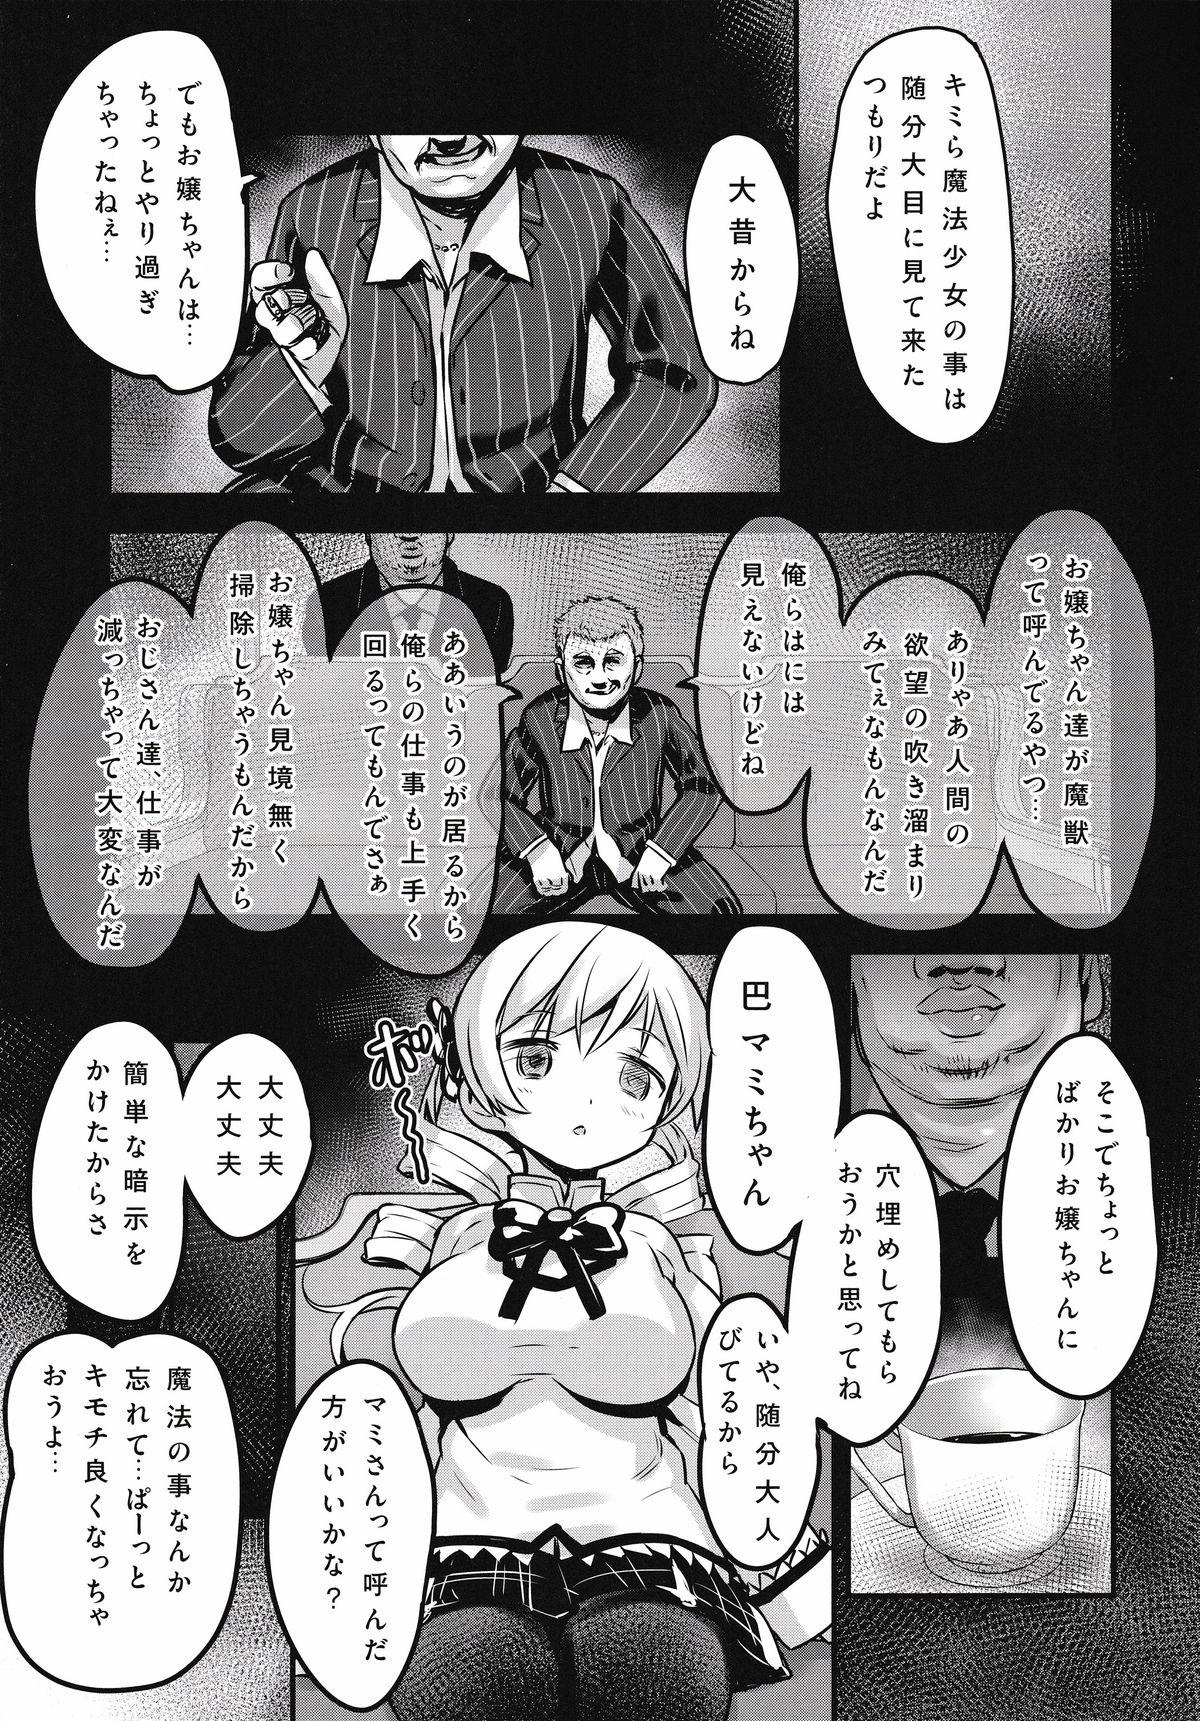 Self Shiritsu Mitakihara Chuugaku 3-nensei Tomoe Mami Hentai AV Debut - Puella magi madoka magica Lez - Page 4